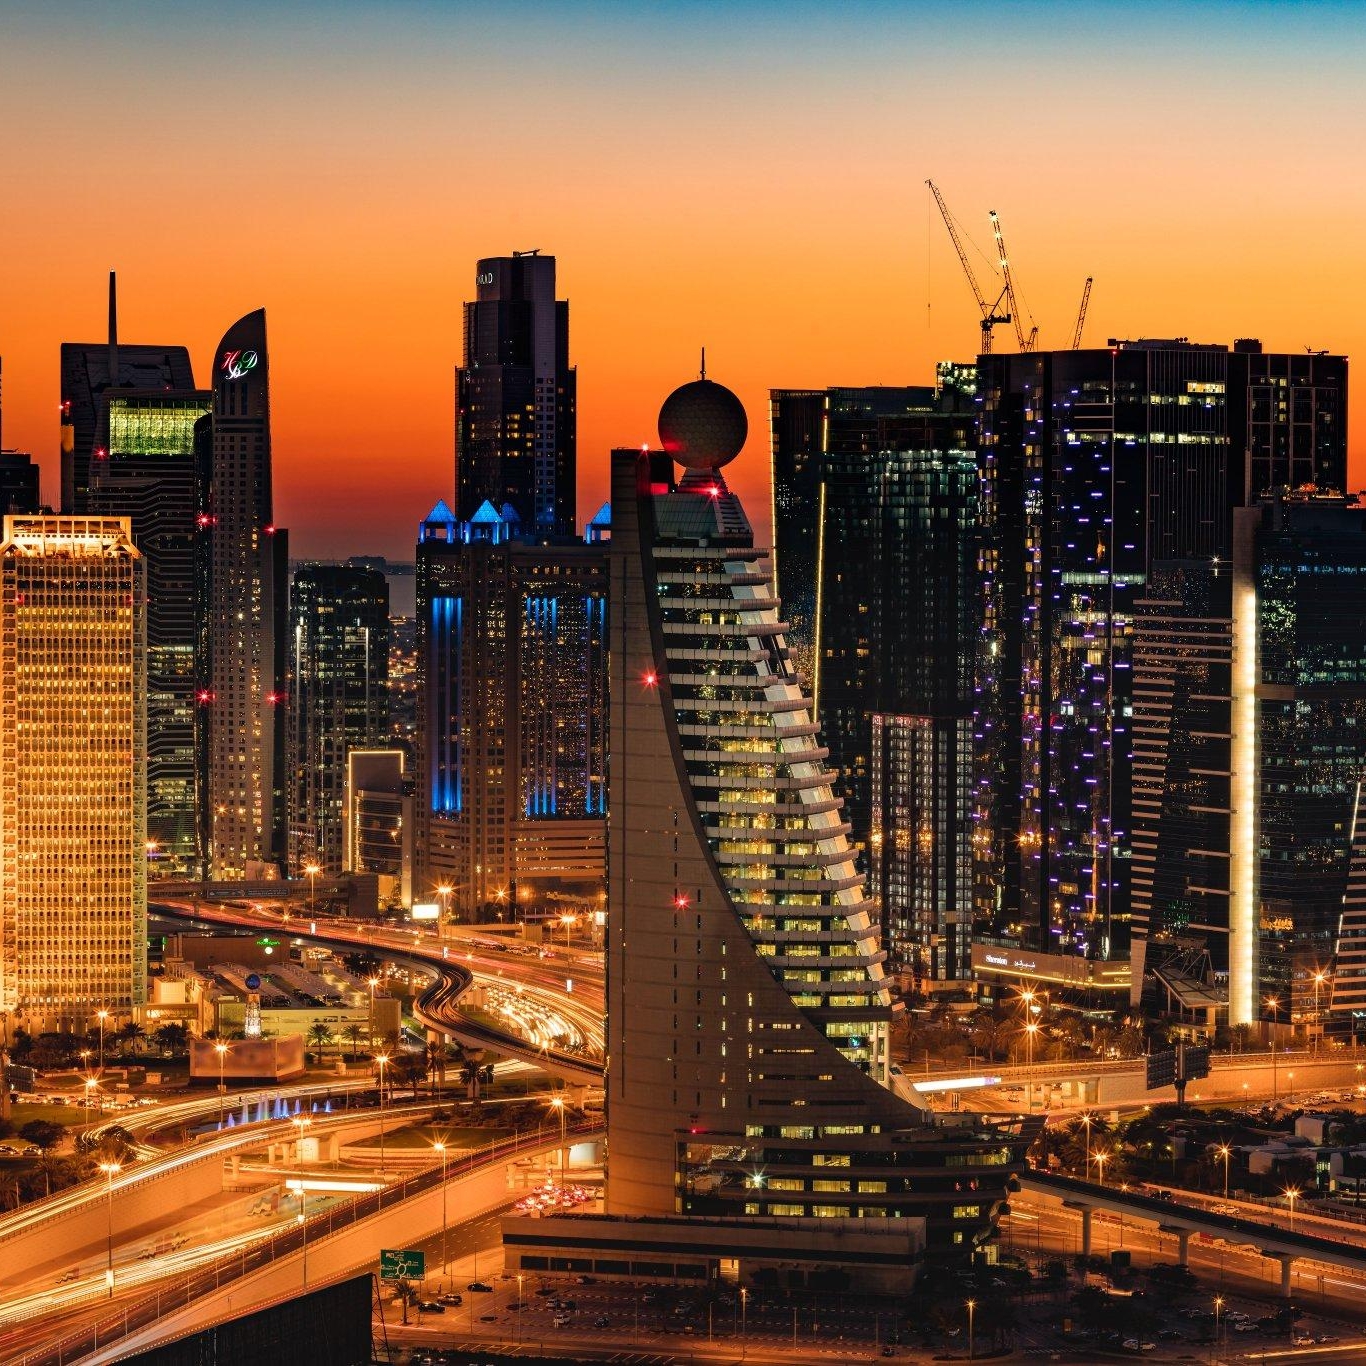 UAE Golden Visa: 44,000 Dubai residents get long-term residency